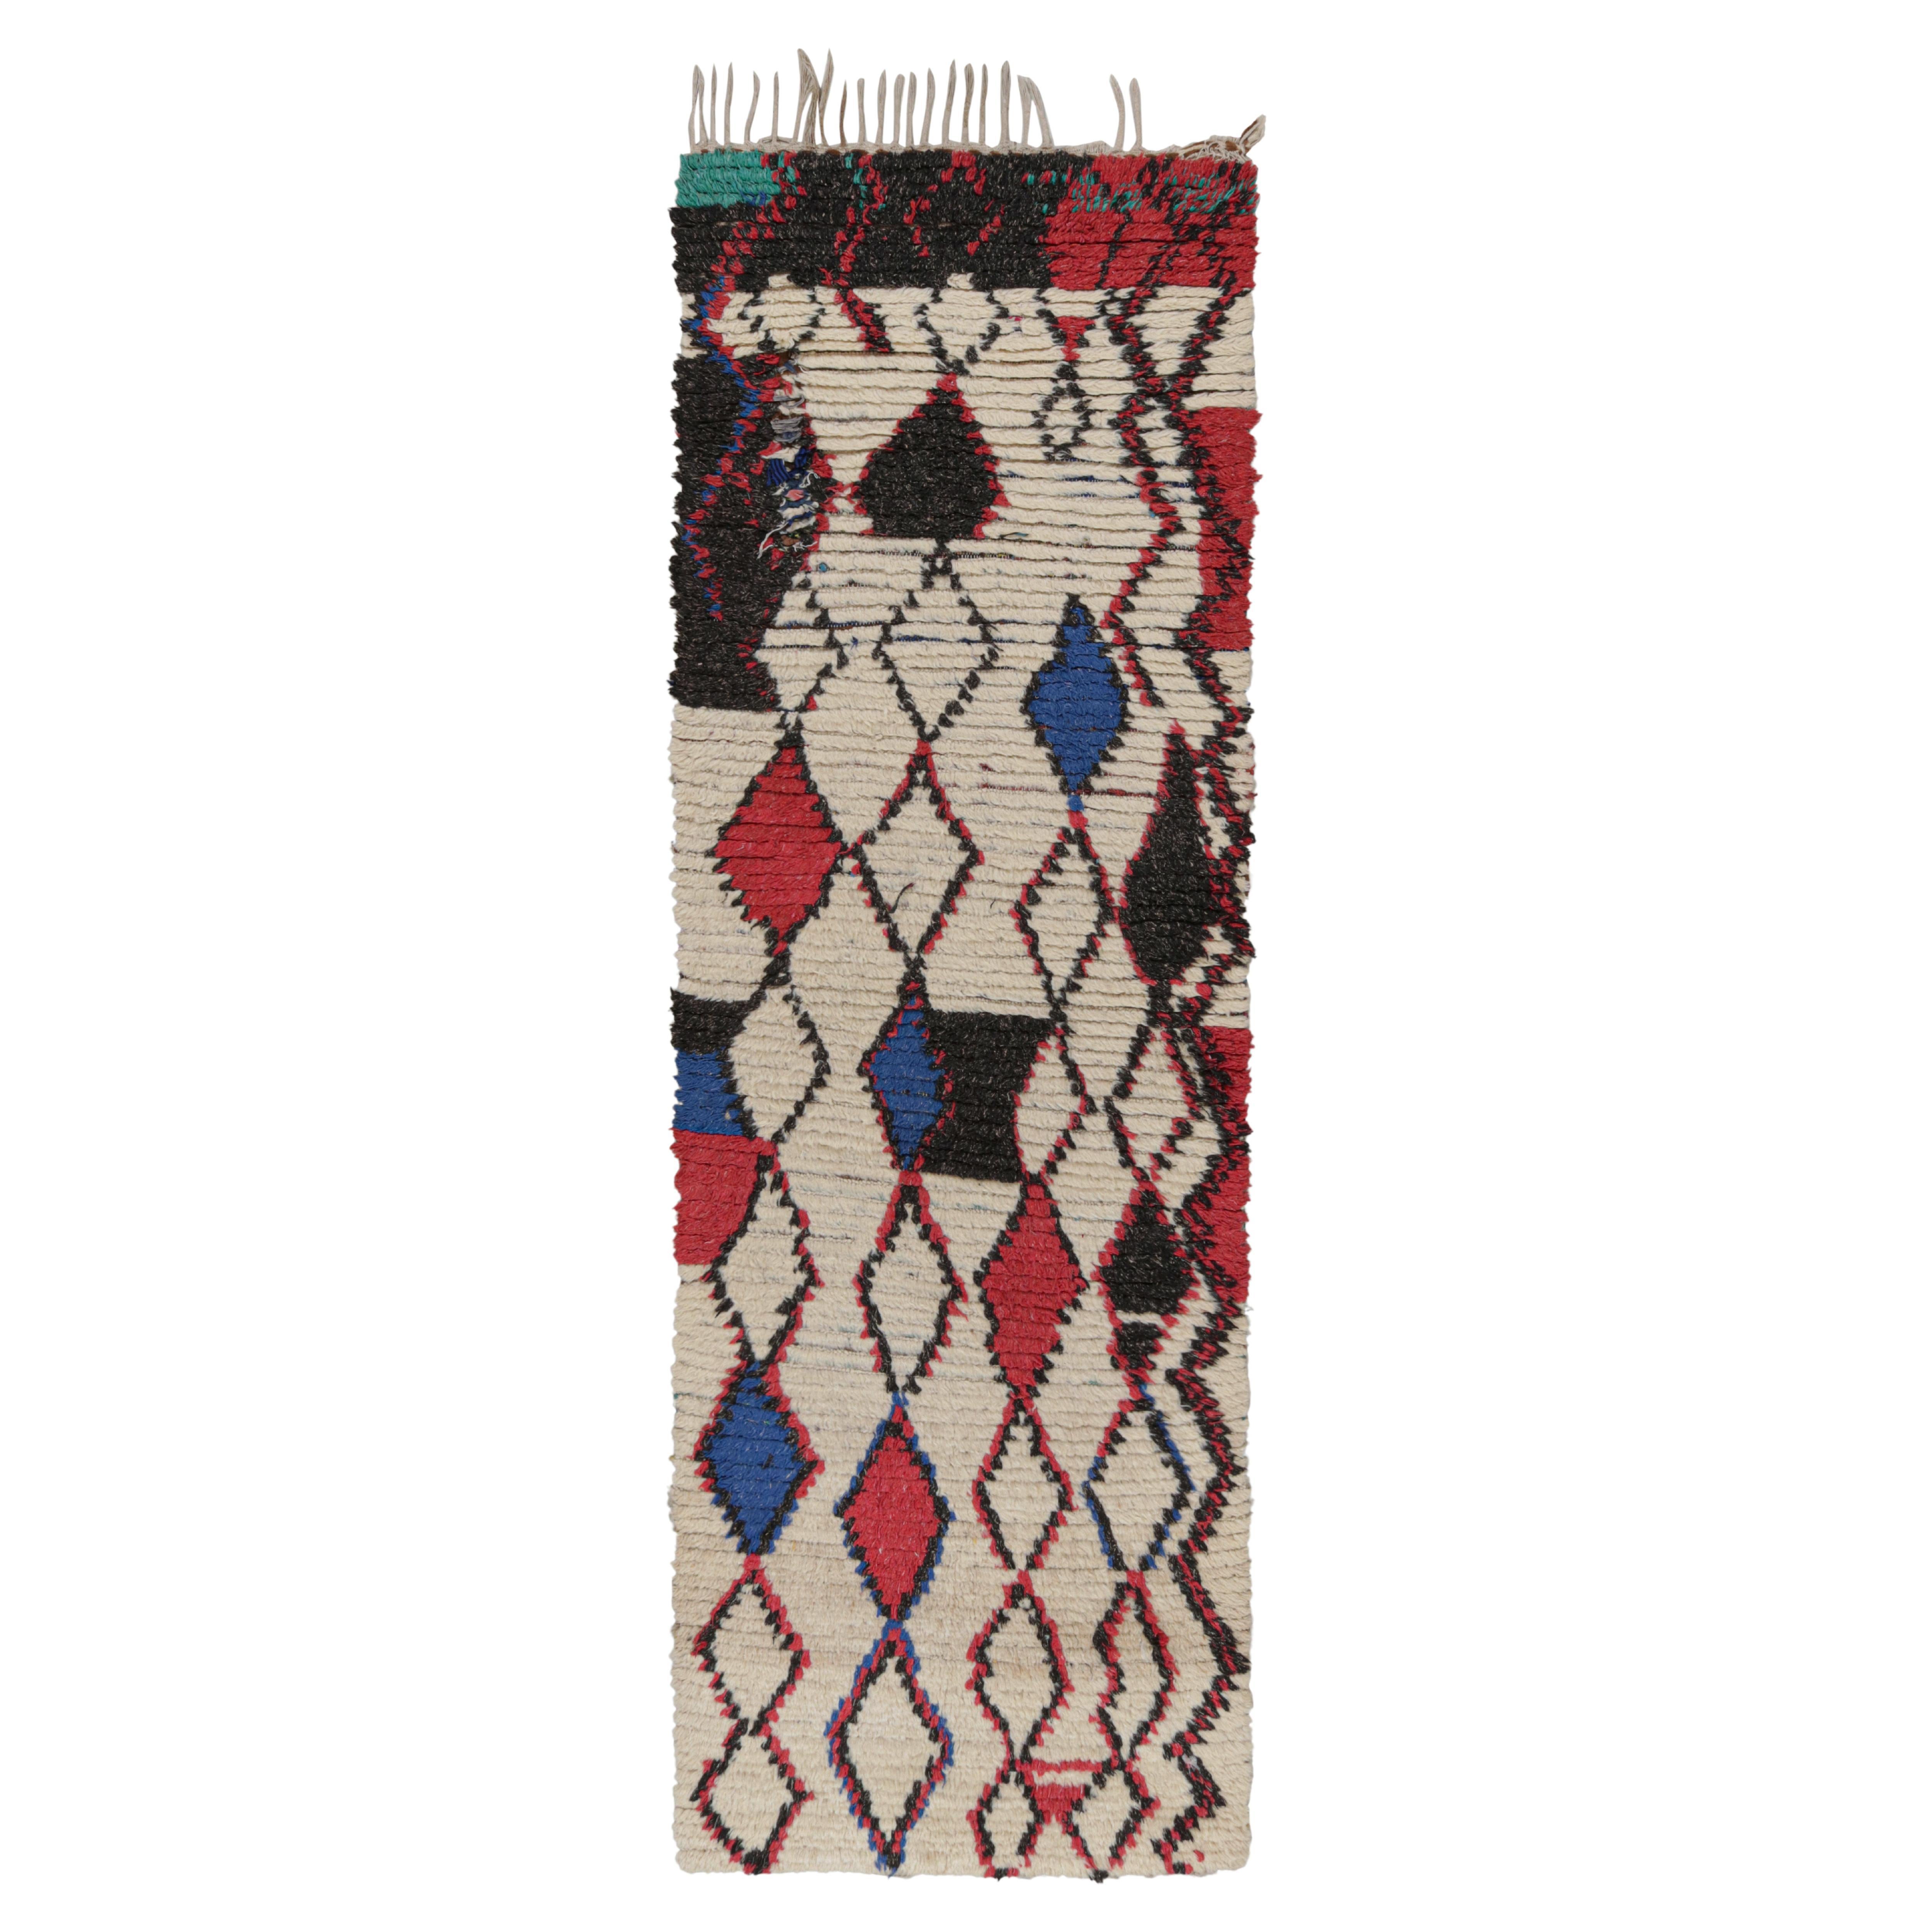 Vintage Midcentury Moroccan Beige Red and Blue Wool Rug by Rug & Kilim